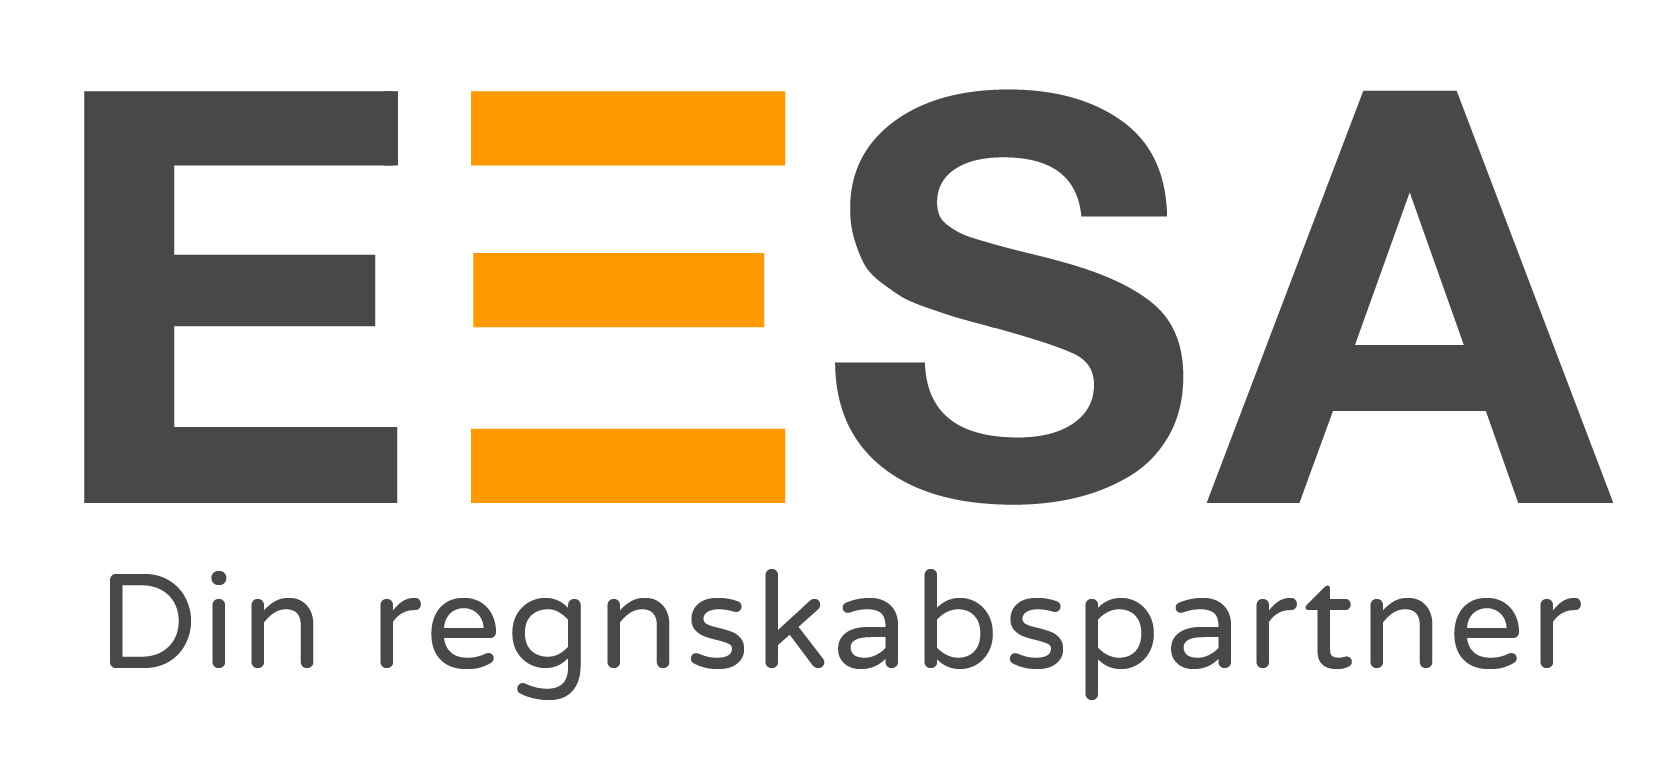 EESA logo